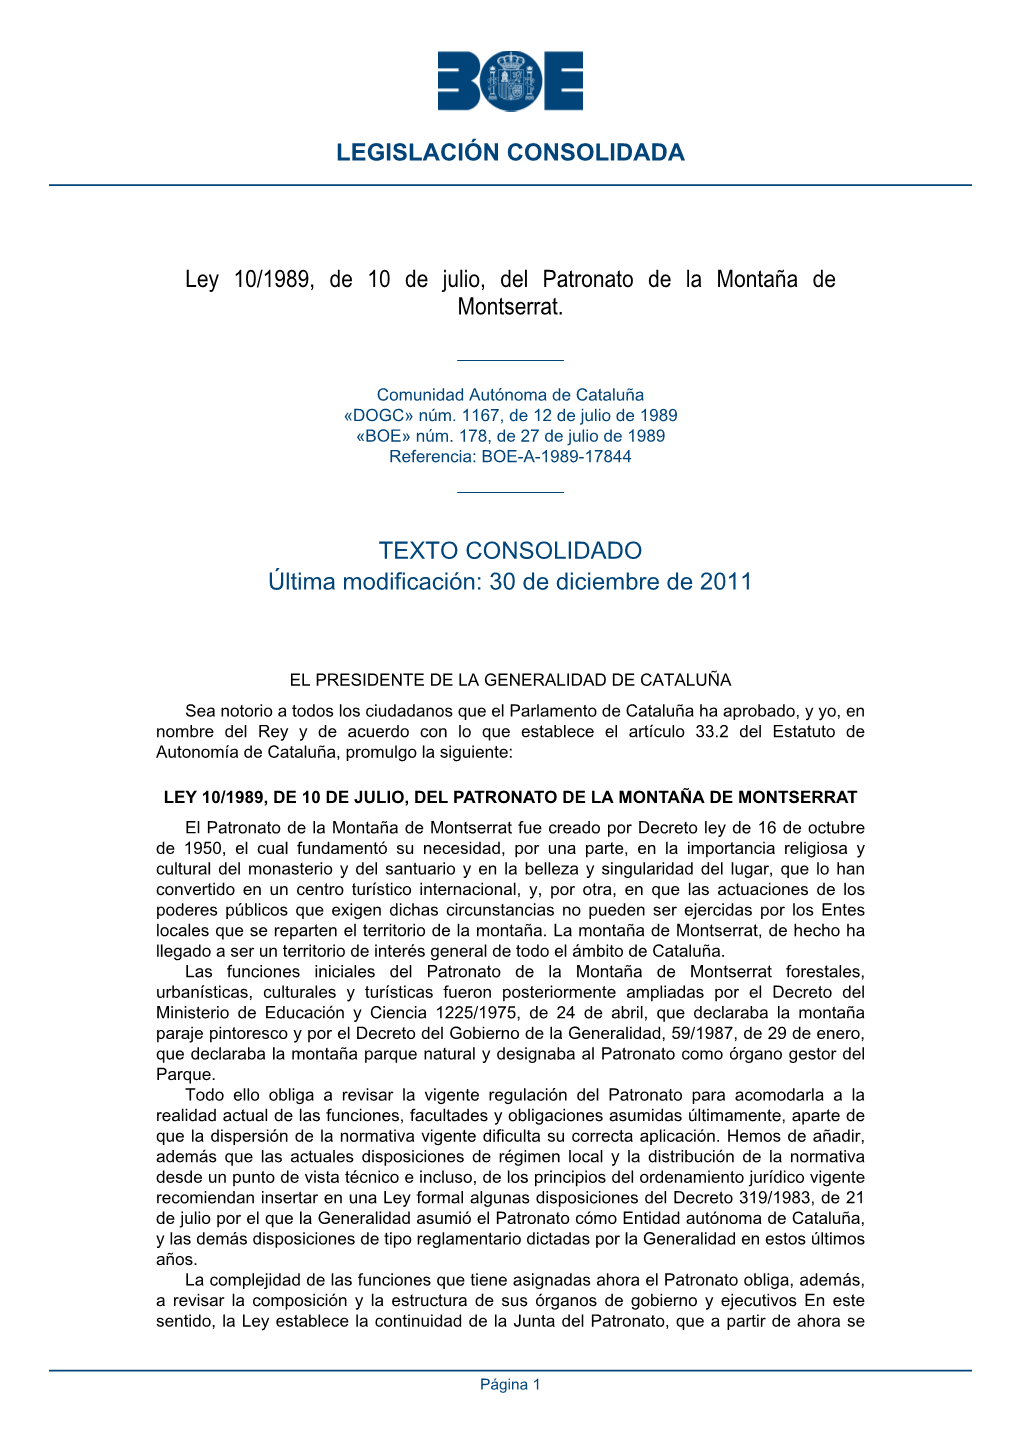 Ley 10/1989, De 10 De Julio, Del Patronato De La Montaña De Montserrat